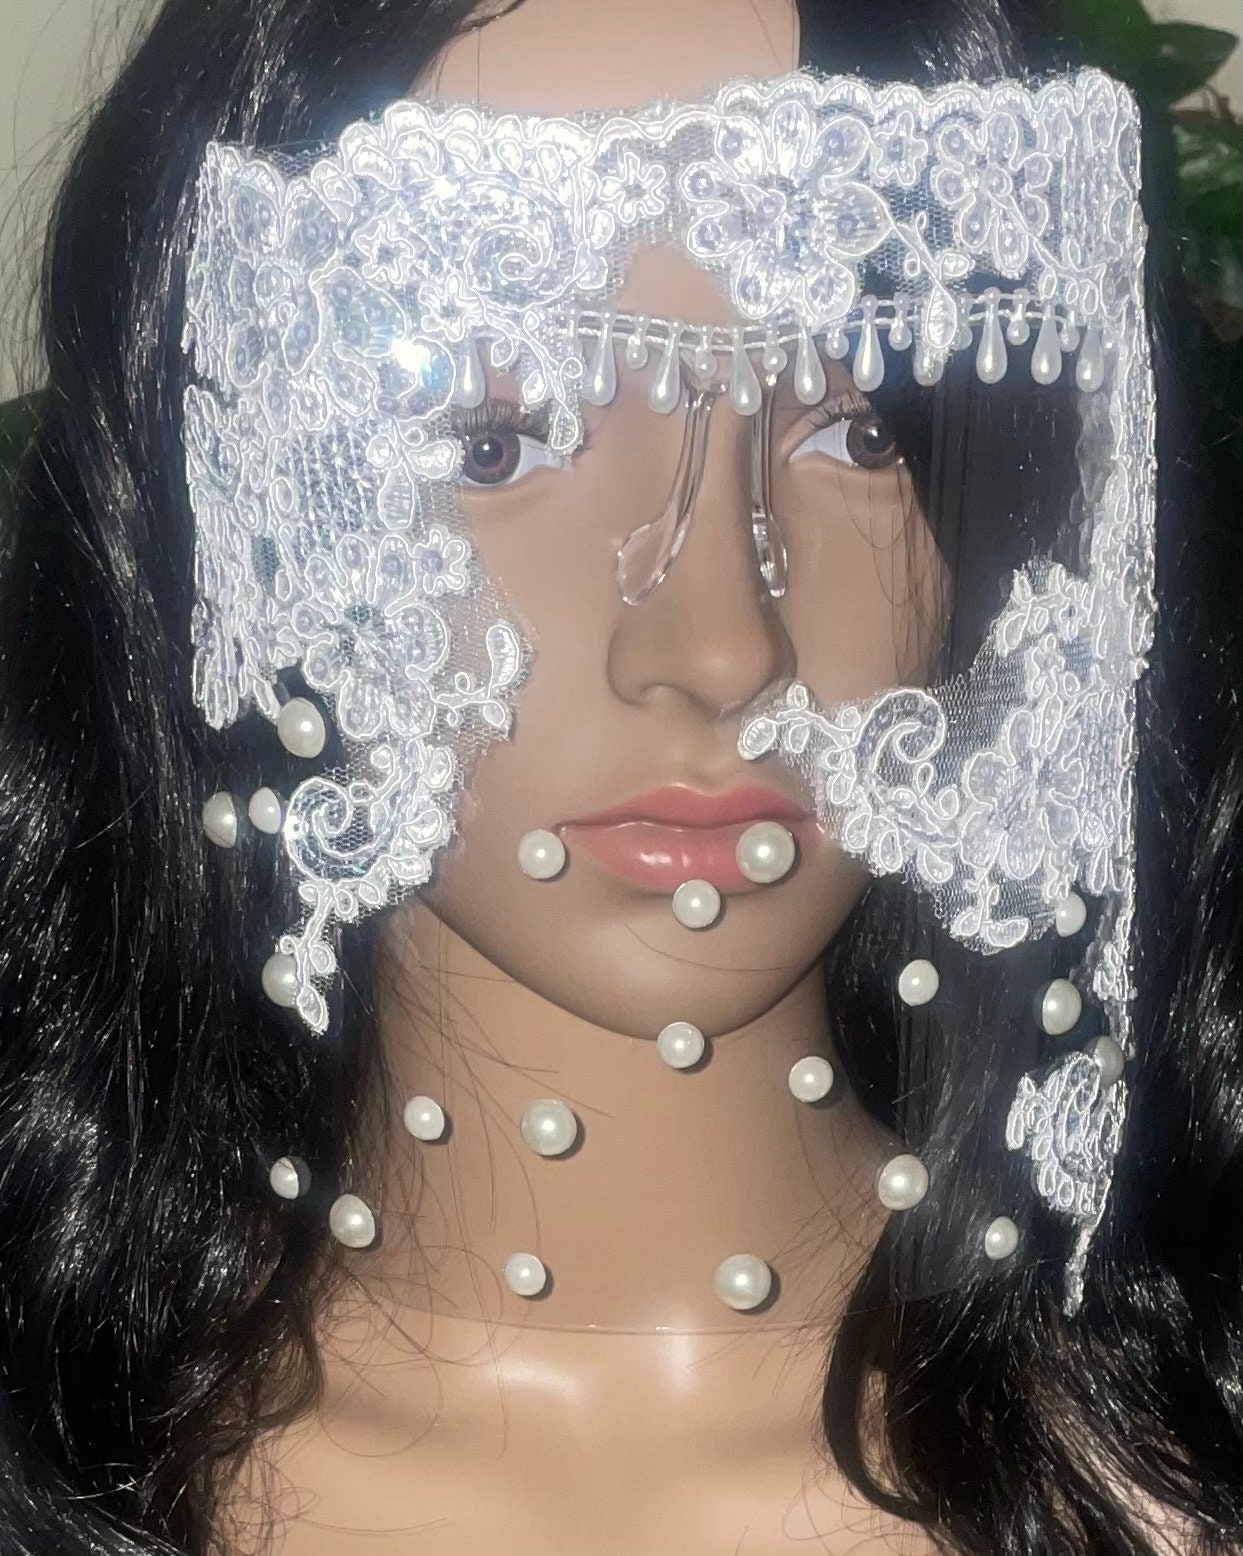 Braut Gesichtsschild | Glam Shield Für Hochzeiten Klare Antibeschlag-Gesichtsabdeckung Weißer Gesichtsschutz Die Brautparty von Etsy - DesignsByJMoB